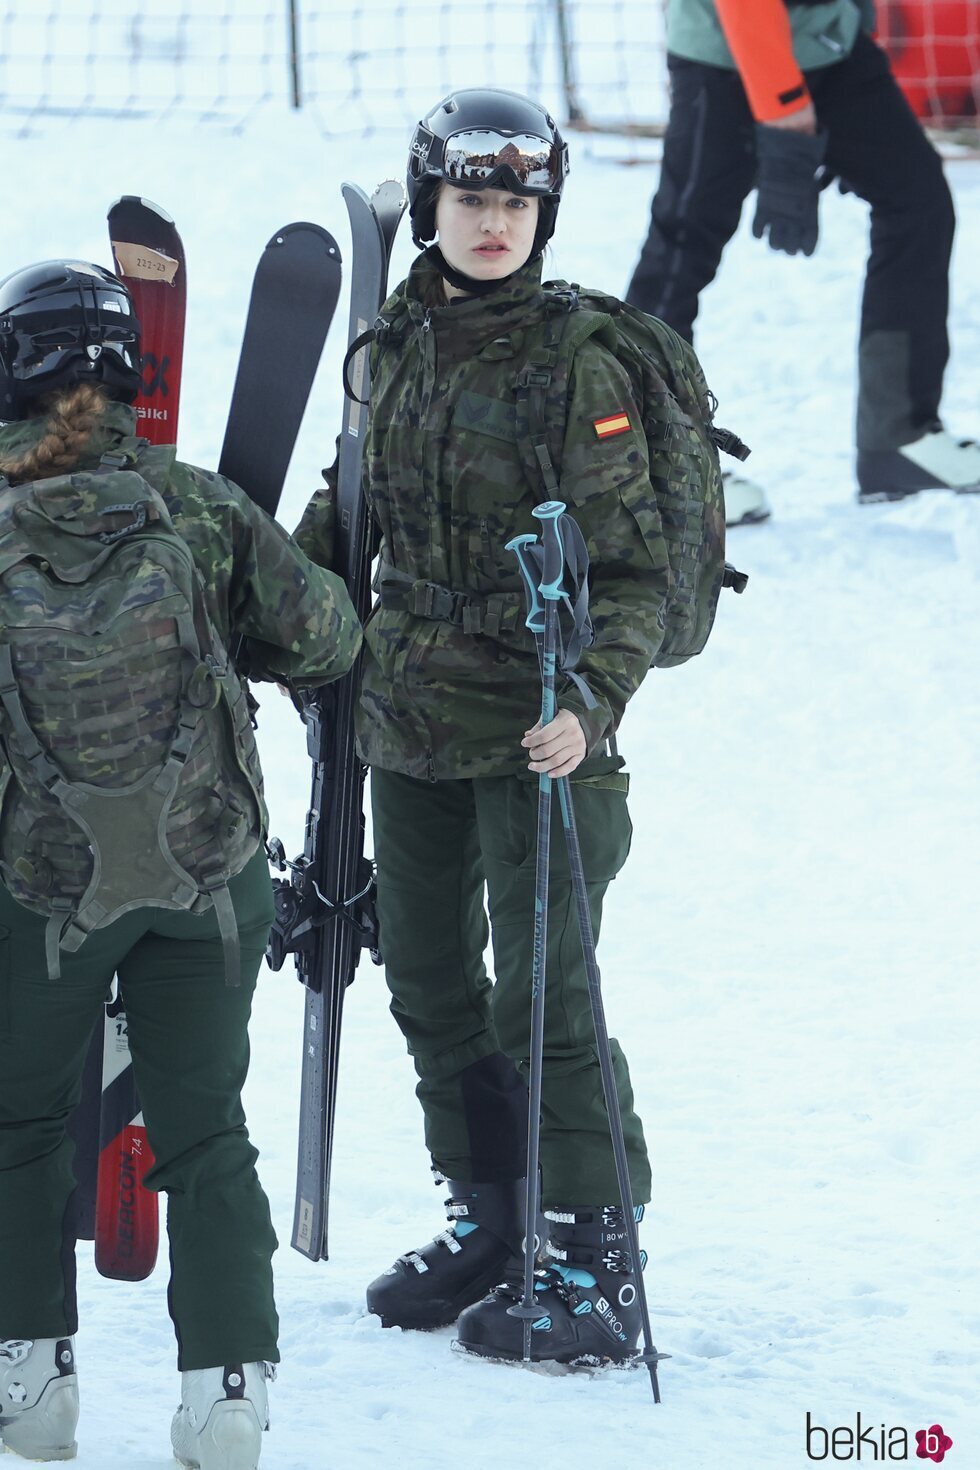 La Princesa Leonor en la nieve en su instrucción militar de montaña en el Pirineo Aragonés